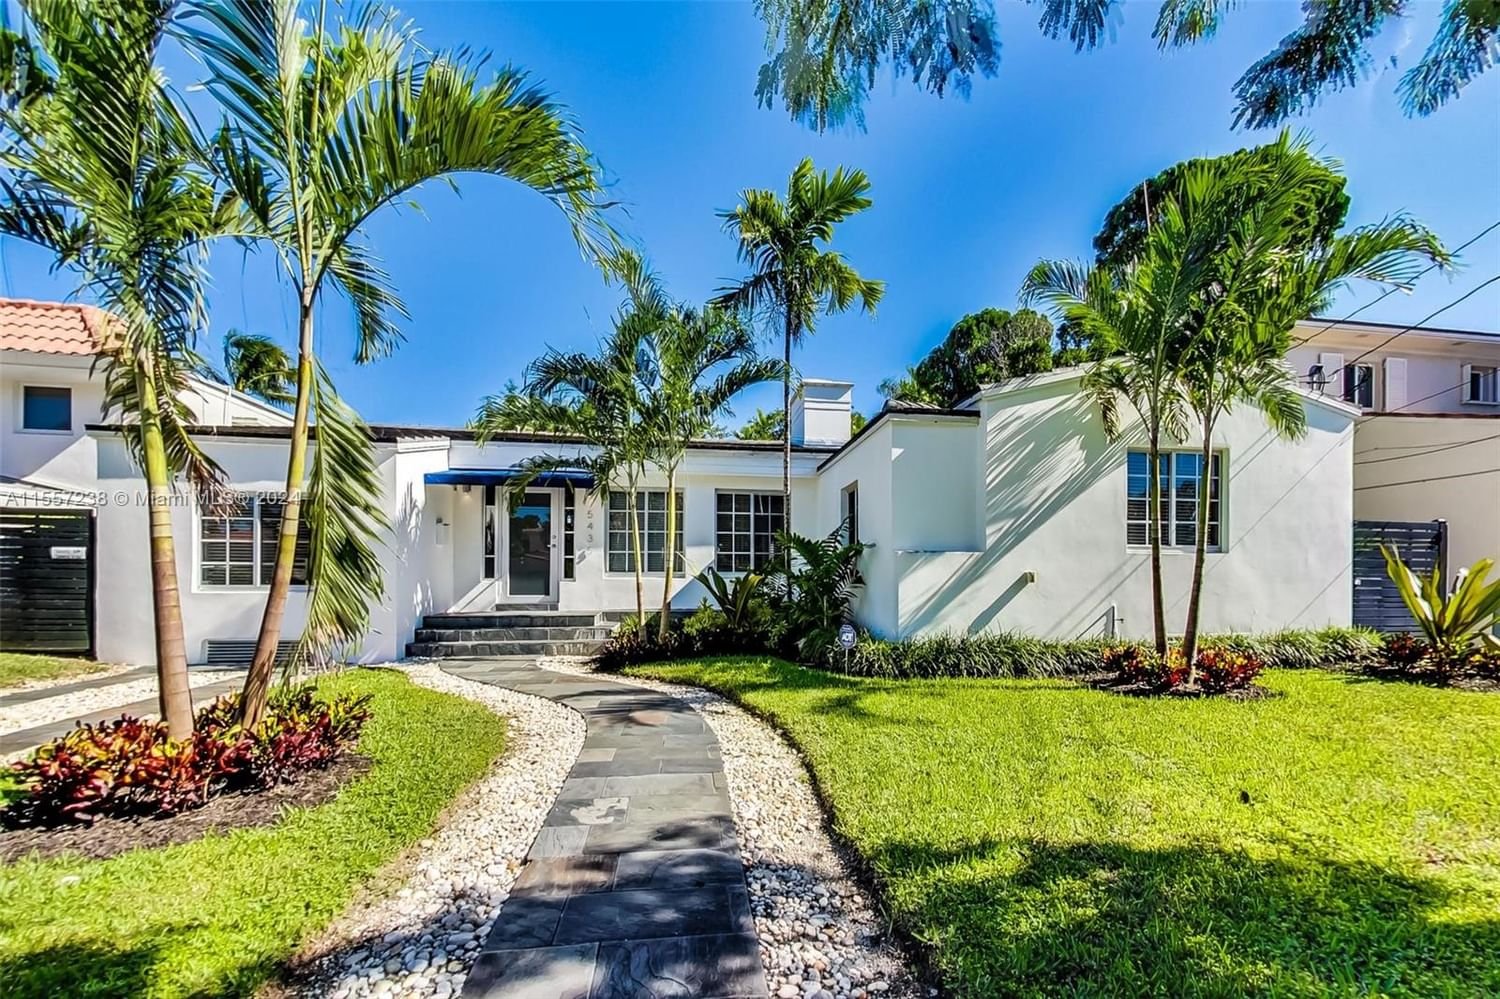 Real estate property located at 5435 La Gorce Dr, Miami-Dade County, BEACH VIEW SUB, Miami Beach, FL